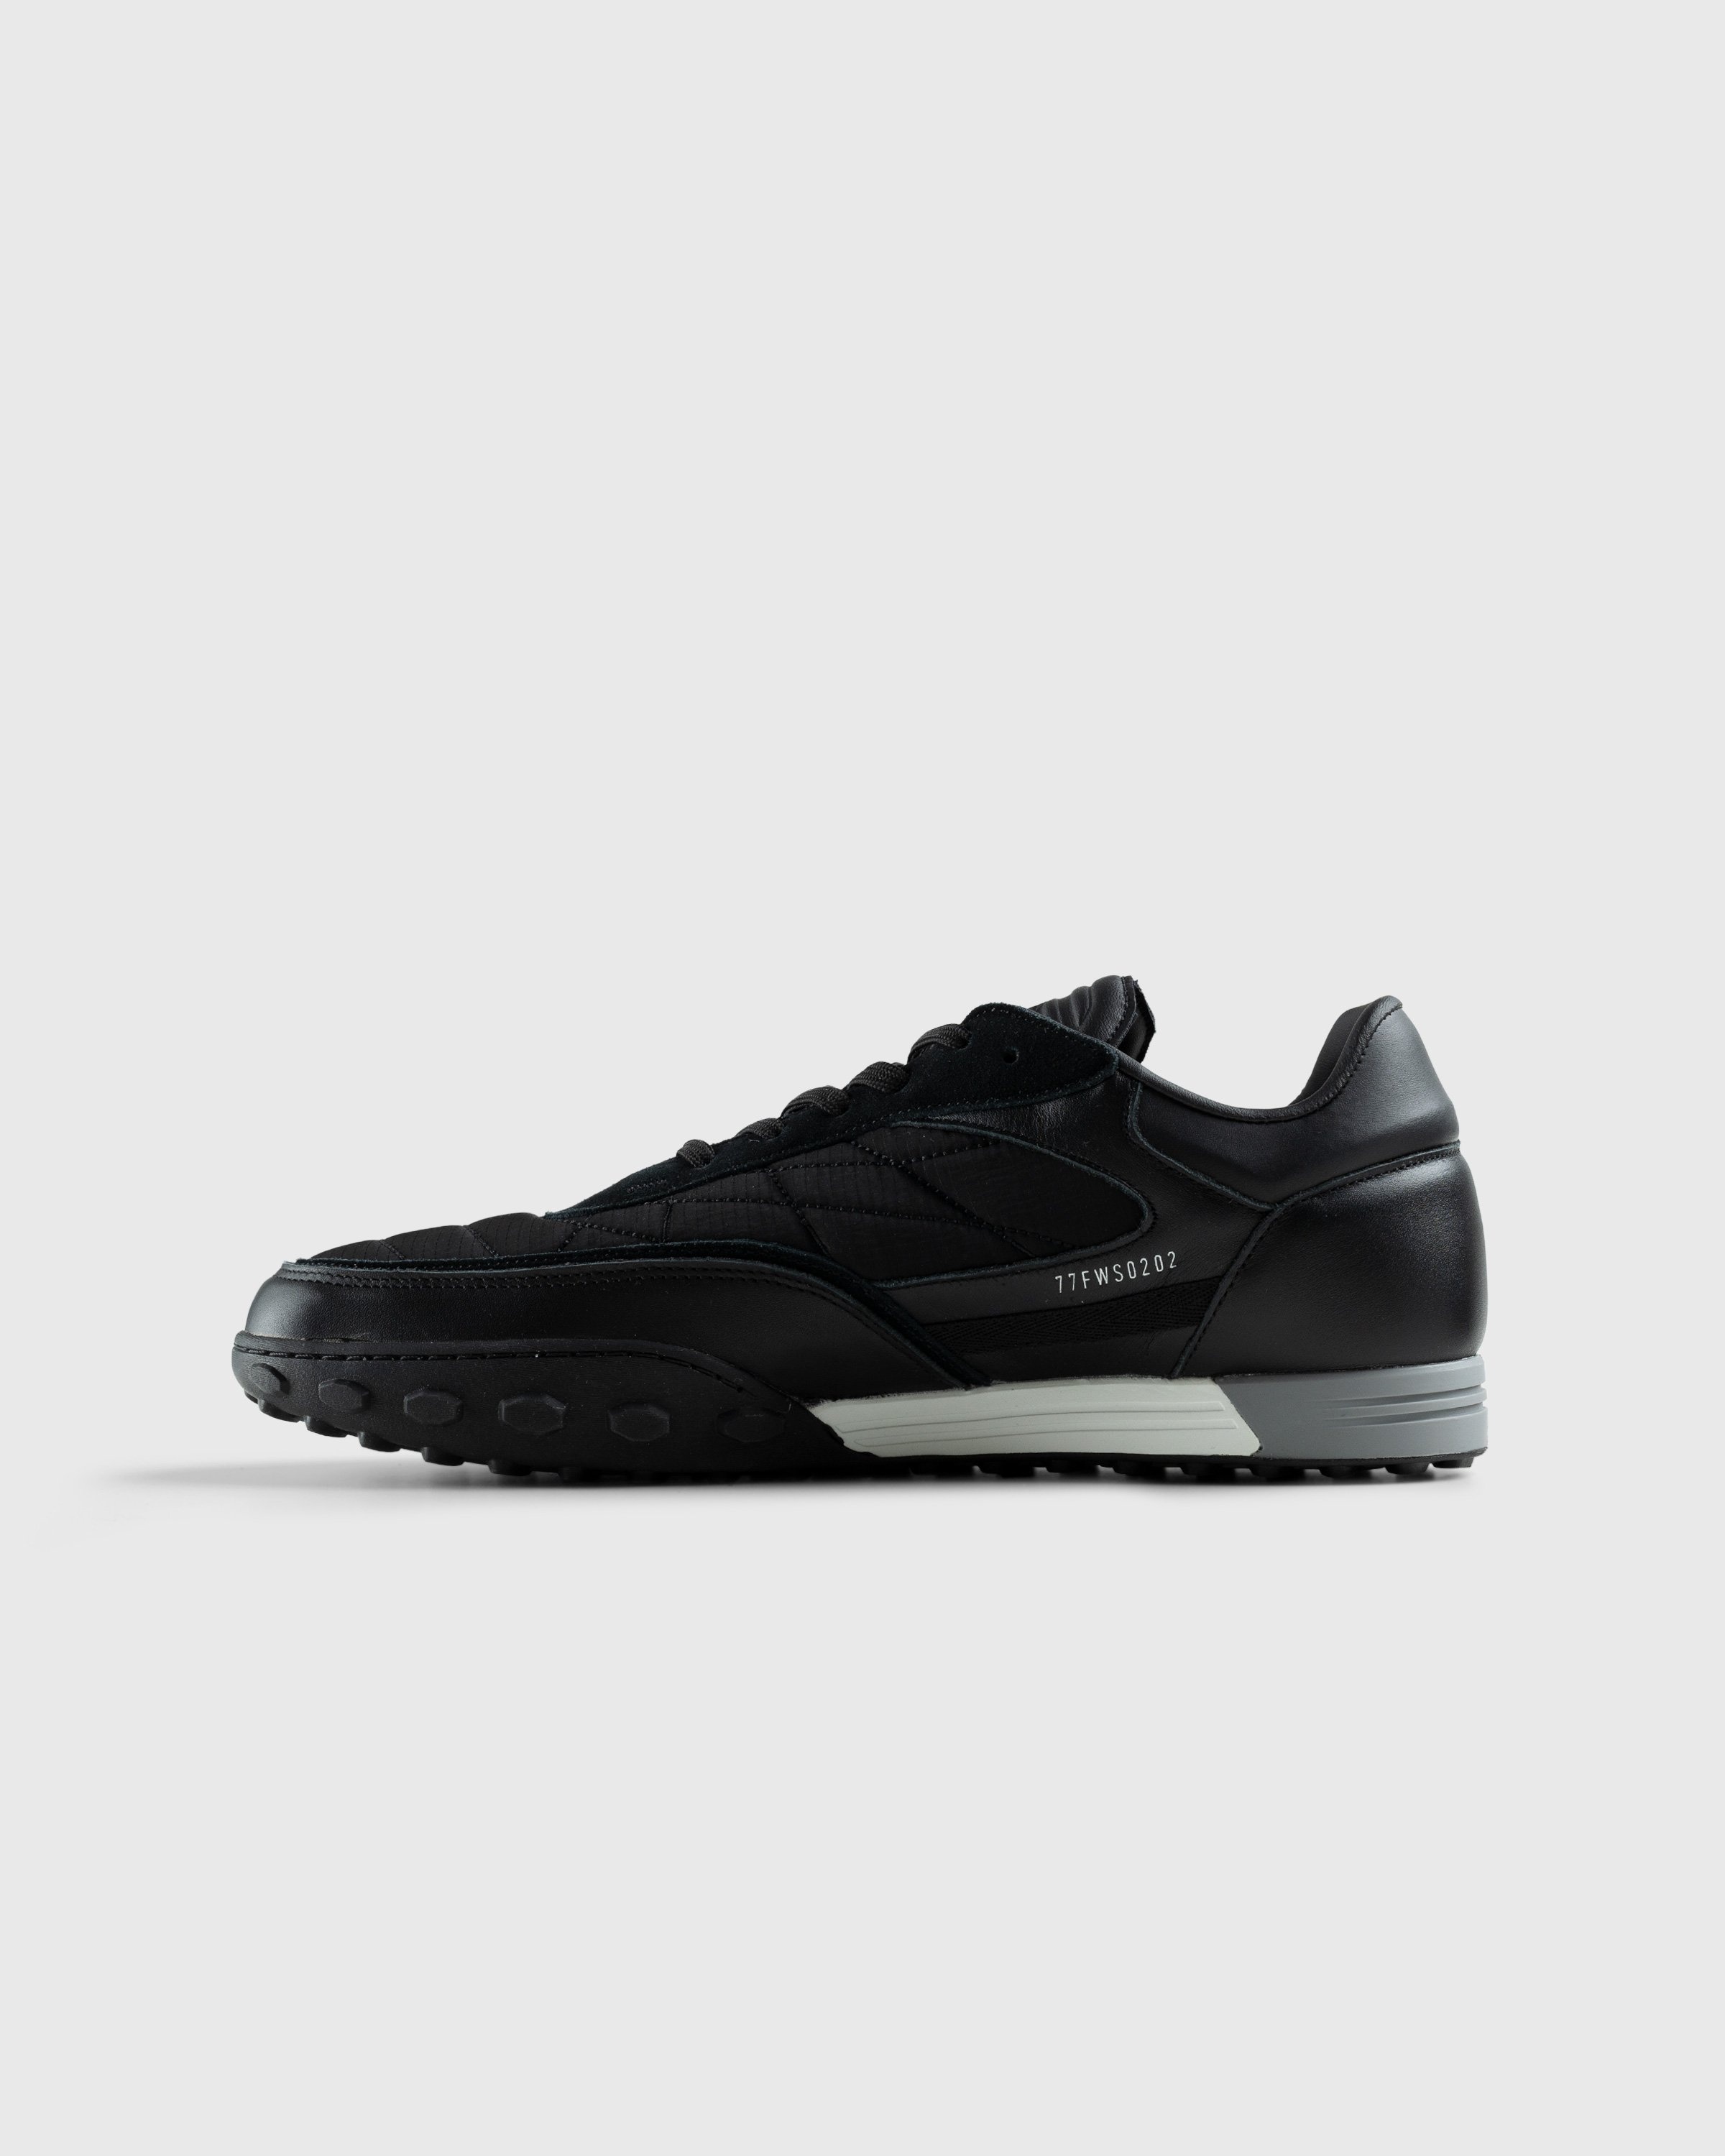 Stone Island – Football Sneaker Black - Sneakers - Black - Image 2